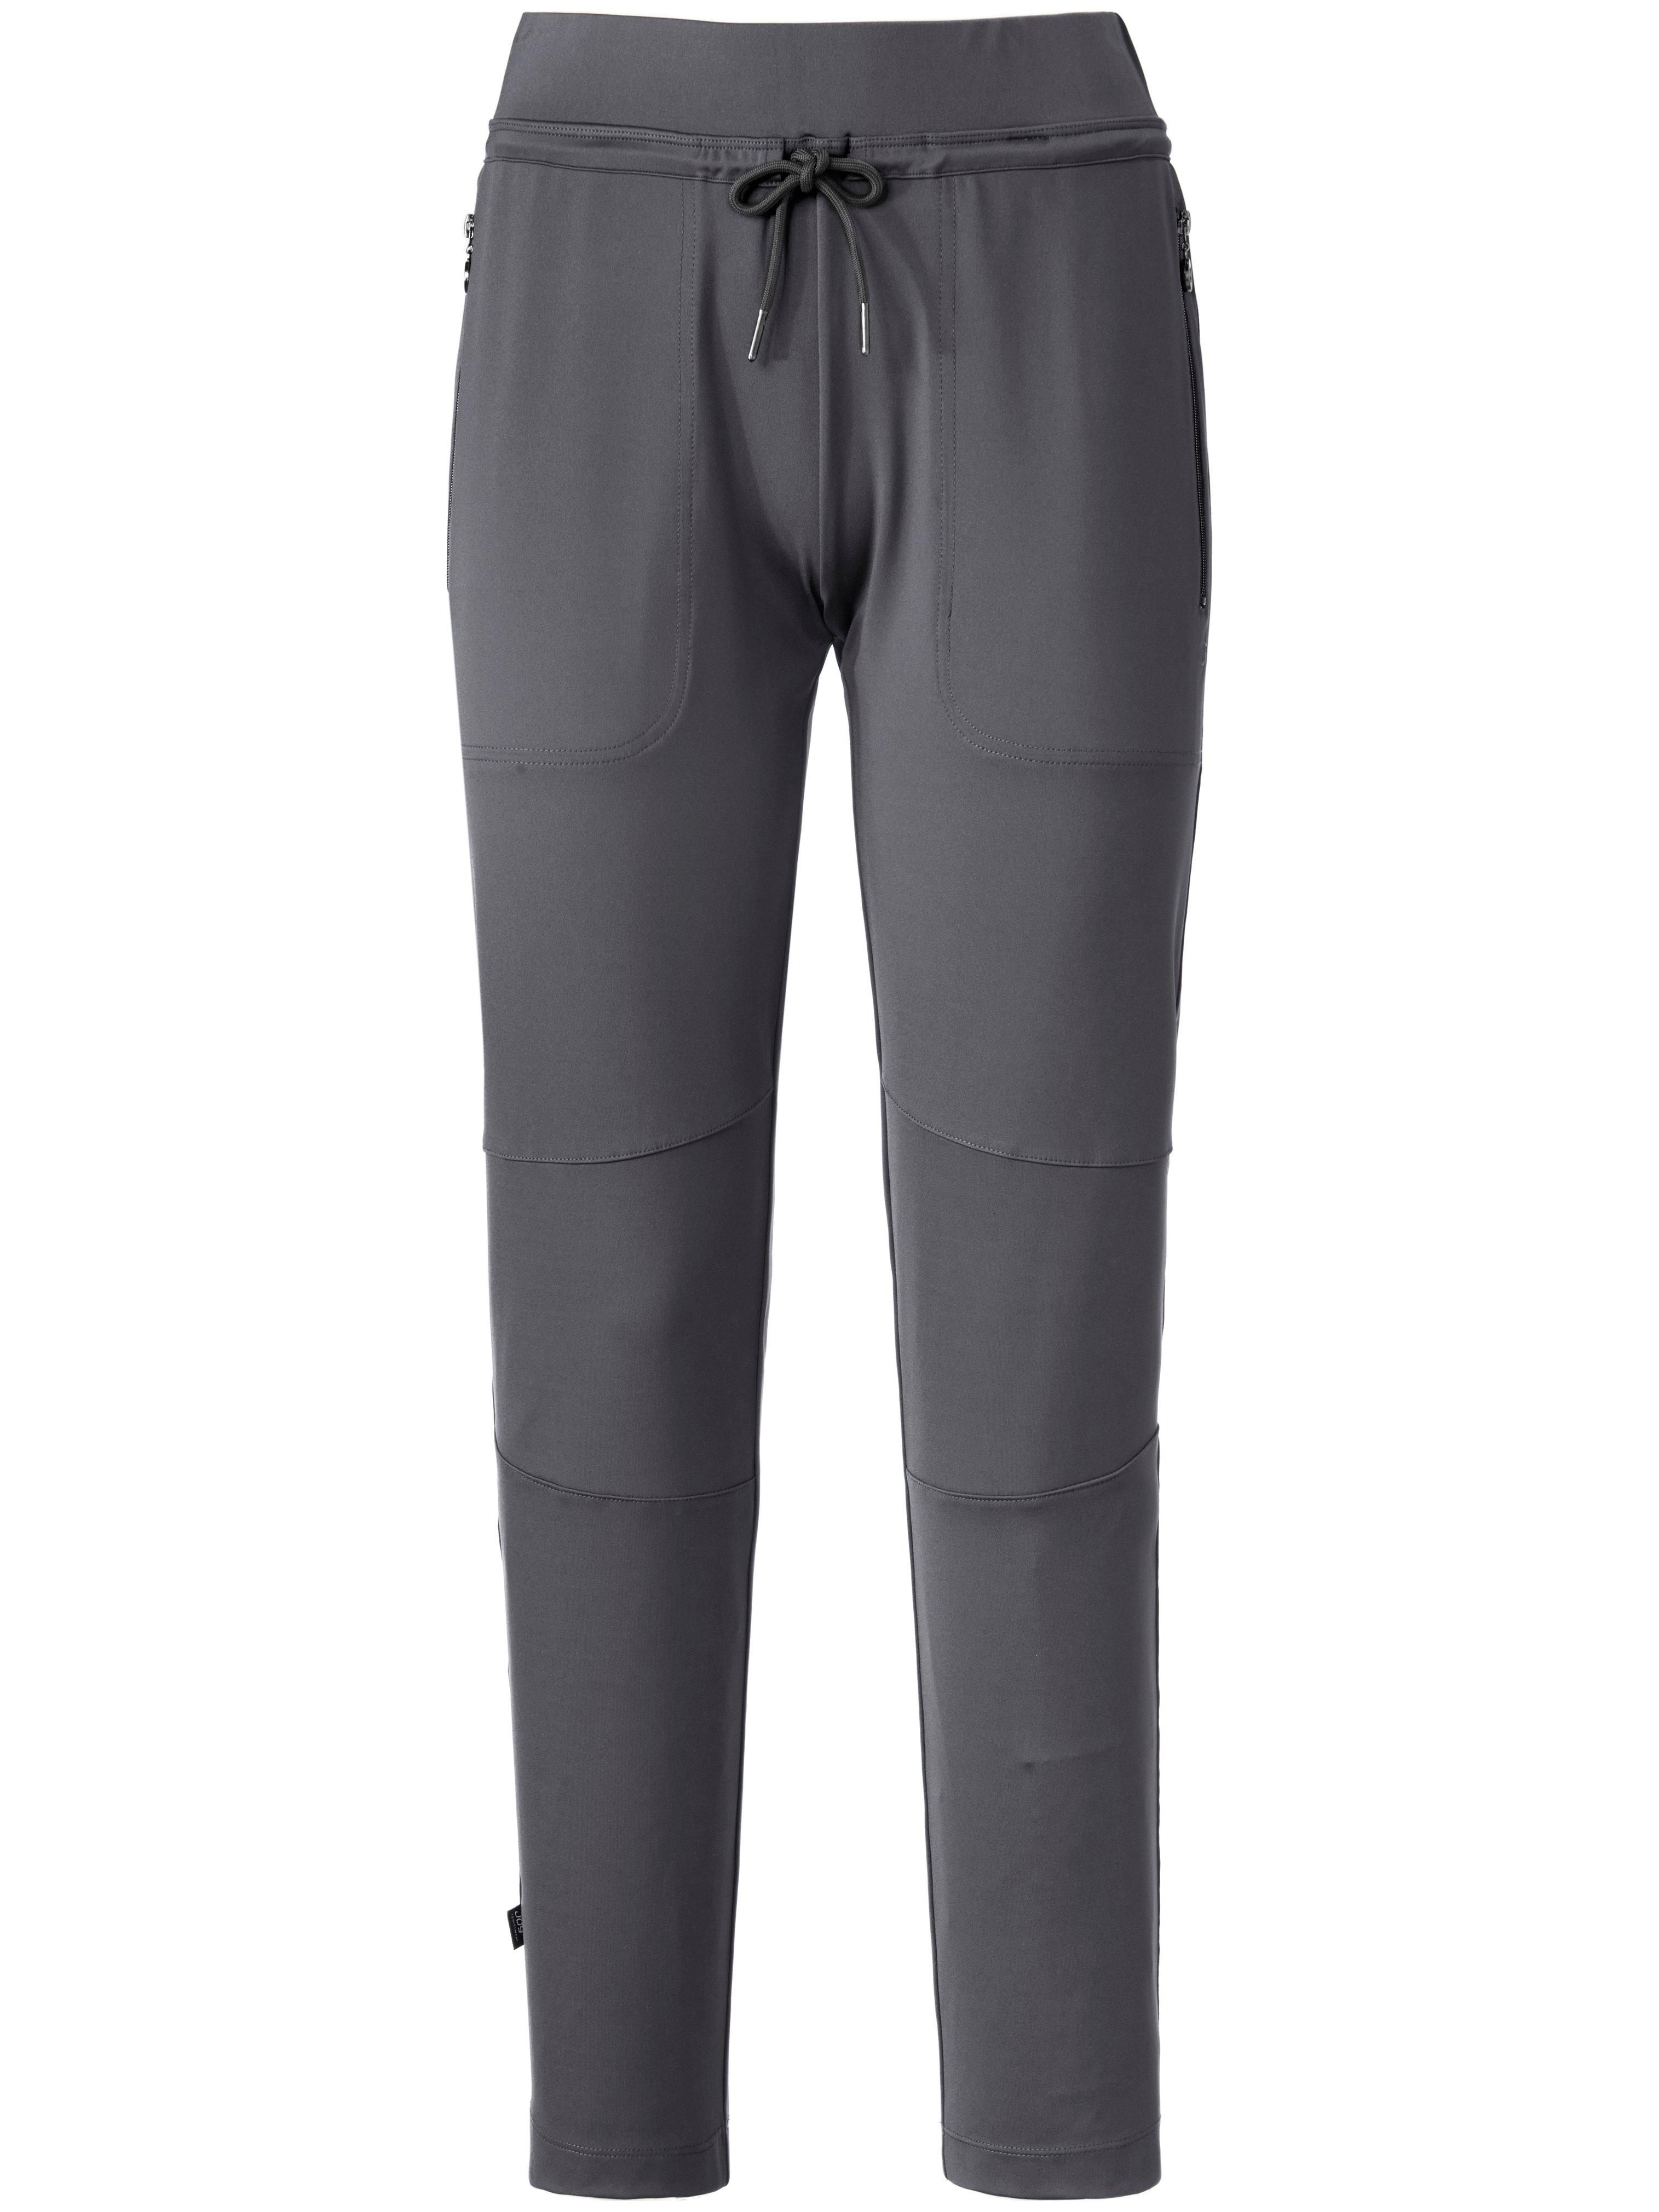 Le pantalon élancé en longueur cheville  JOY Sportswear gris